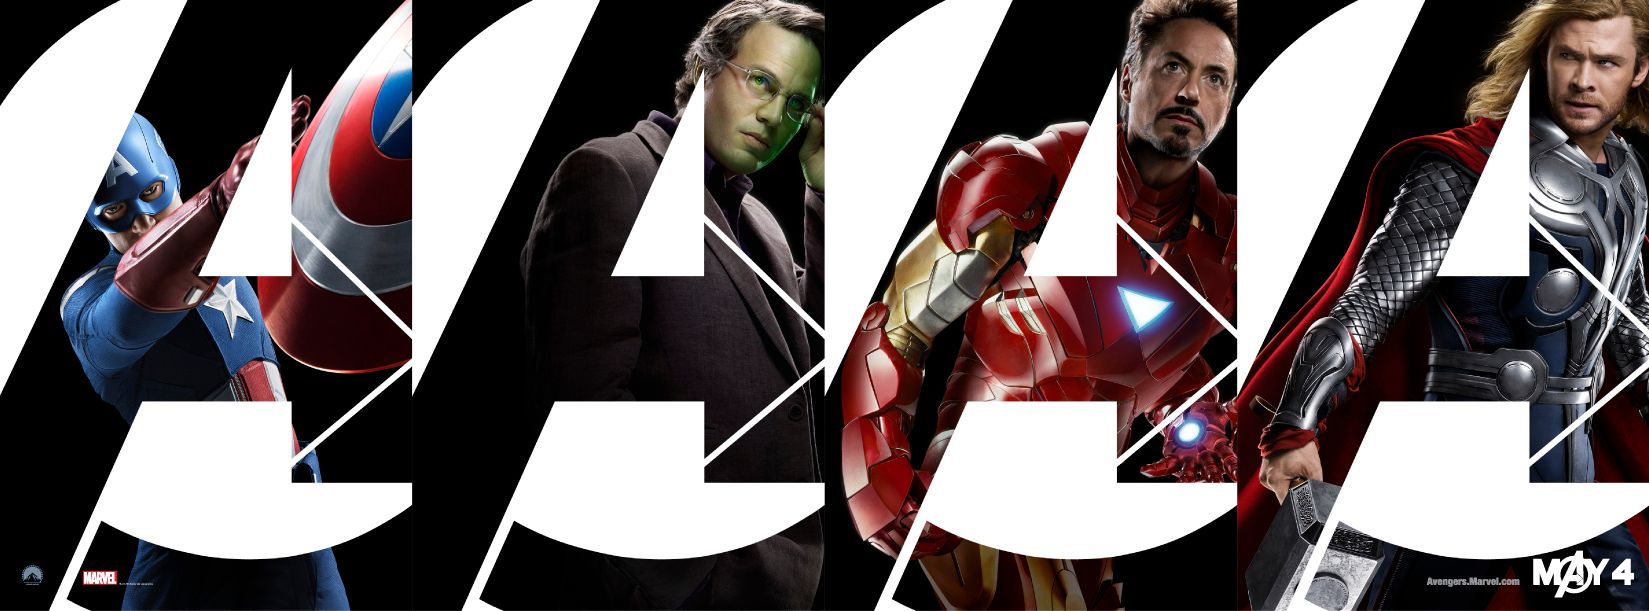 The Avengers Banner #2